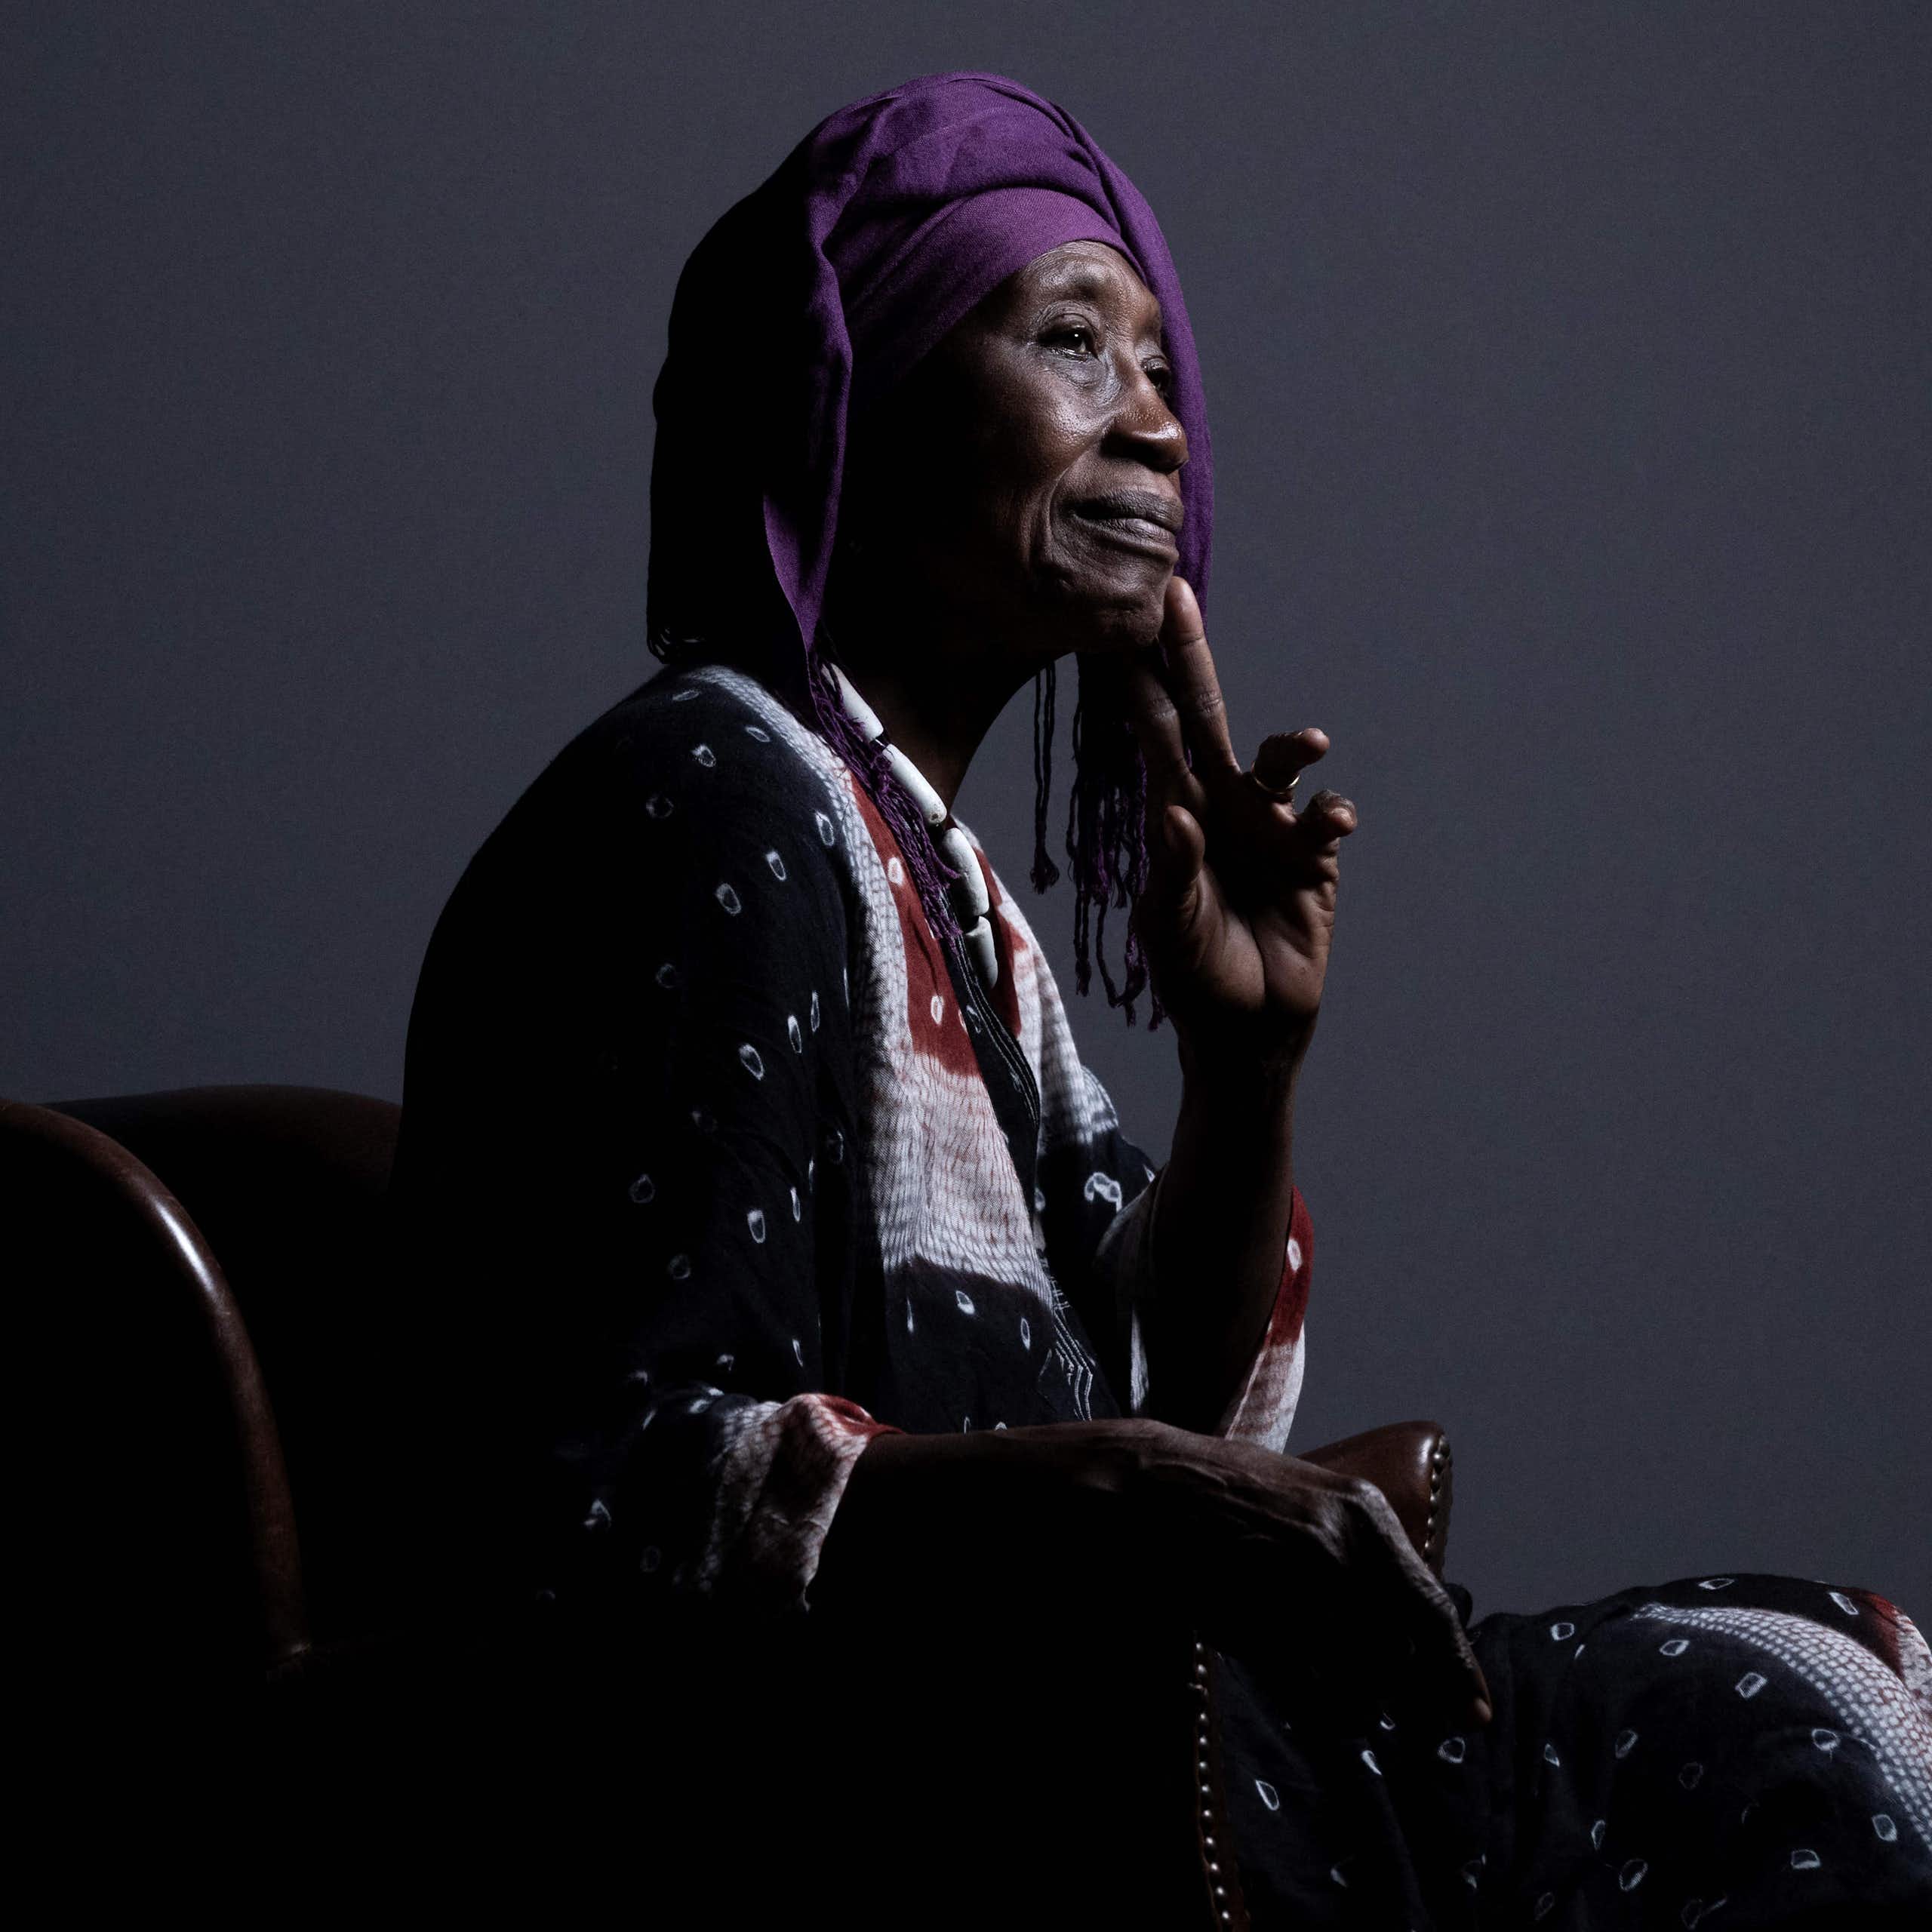 Une femme africaine âgée est assise sur une chaise et pose pour un portrait de profil. Elle est vêtue d'une tenue africaine traditionnelle, porte la main à son menton et sourit légèrement.